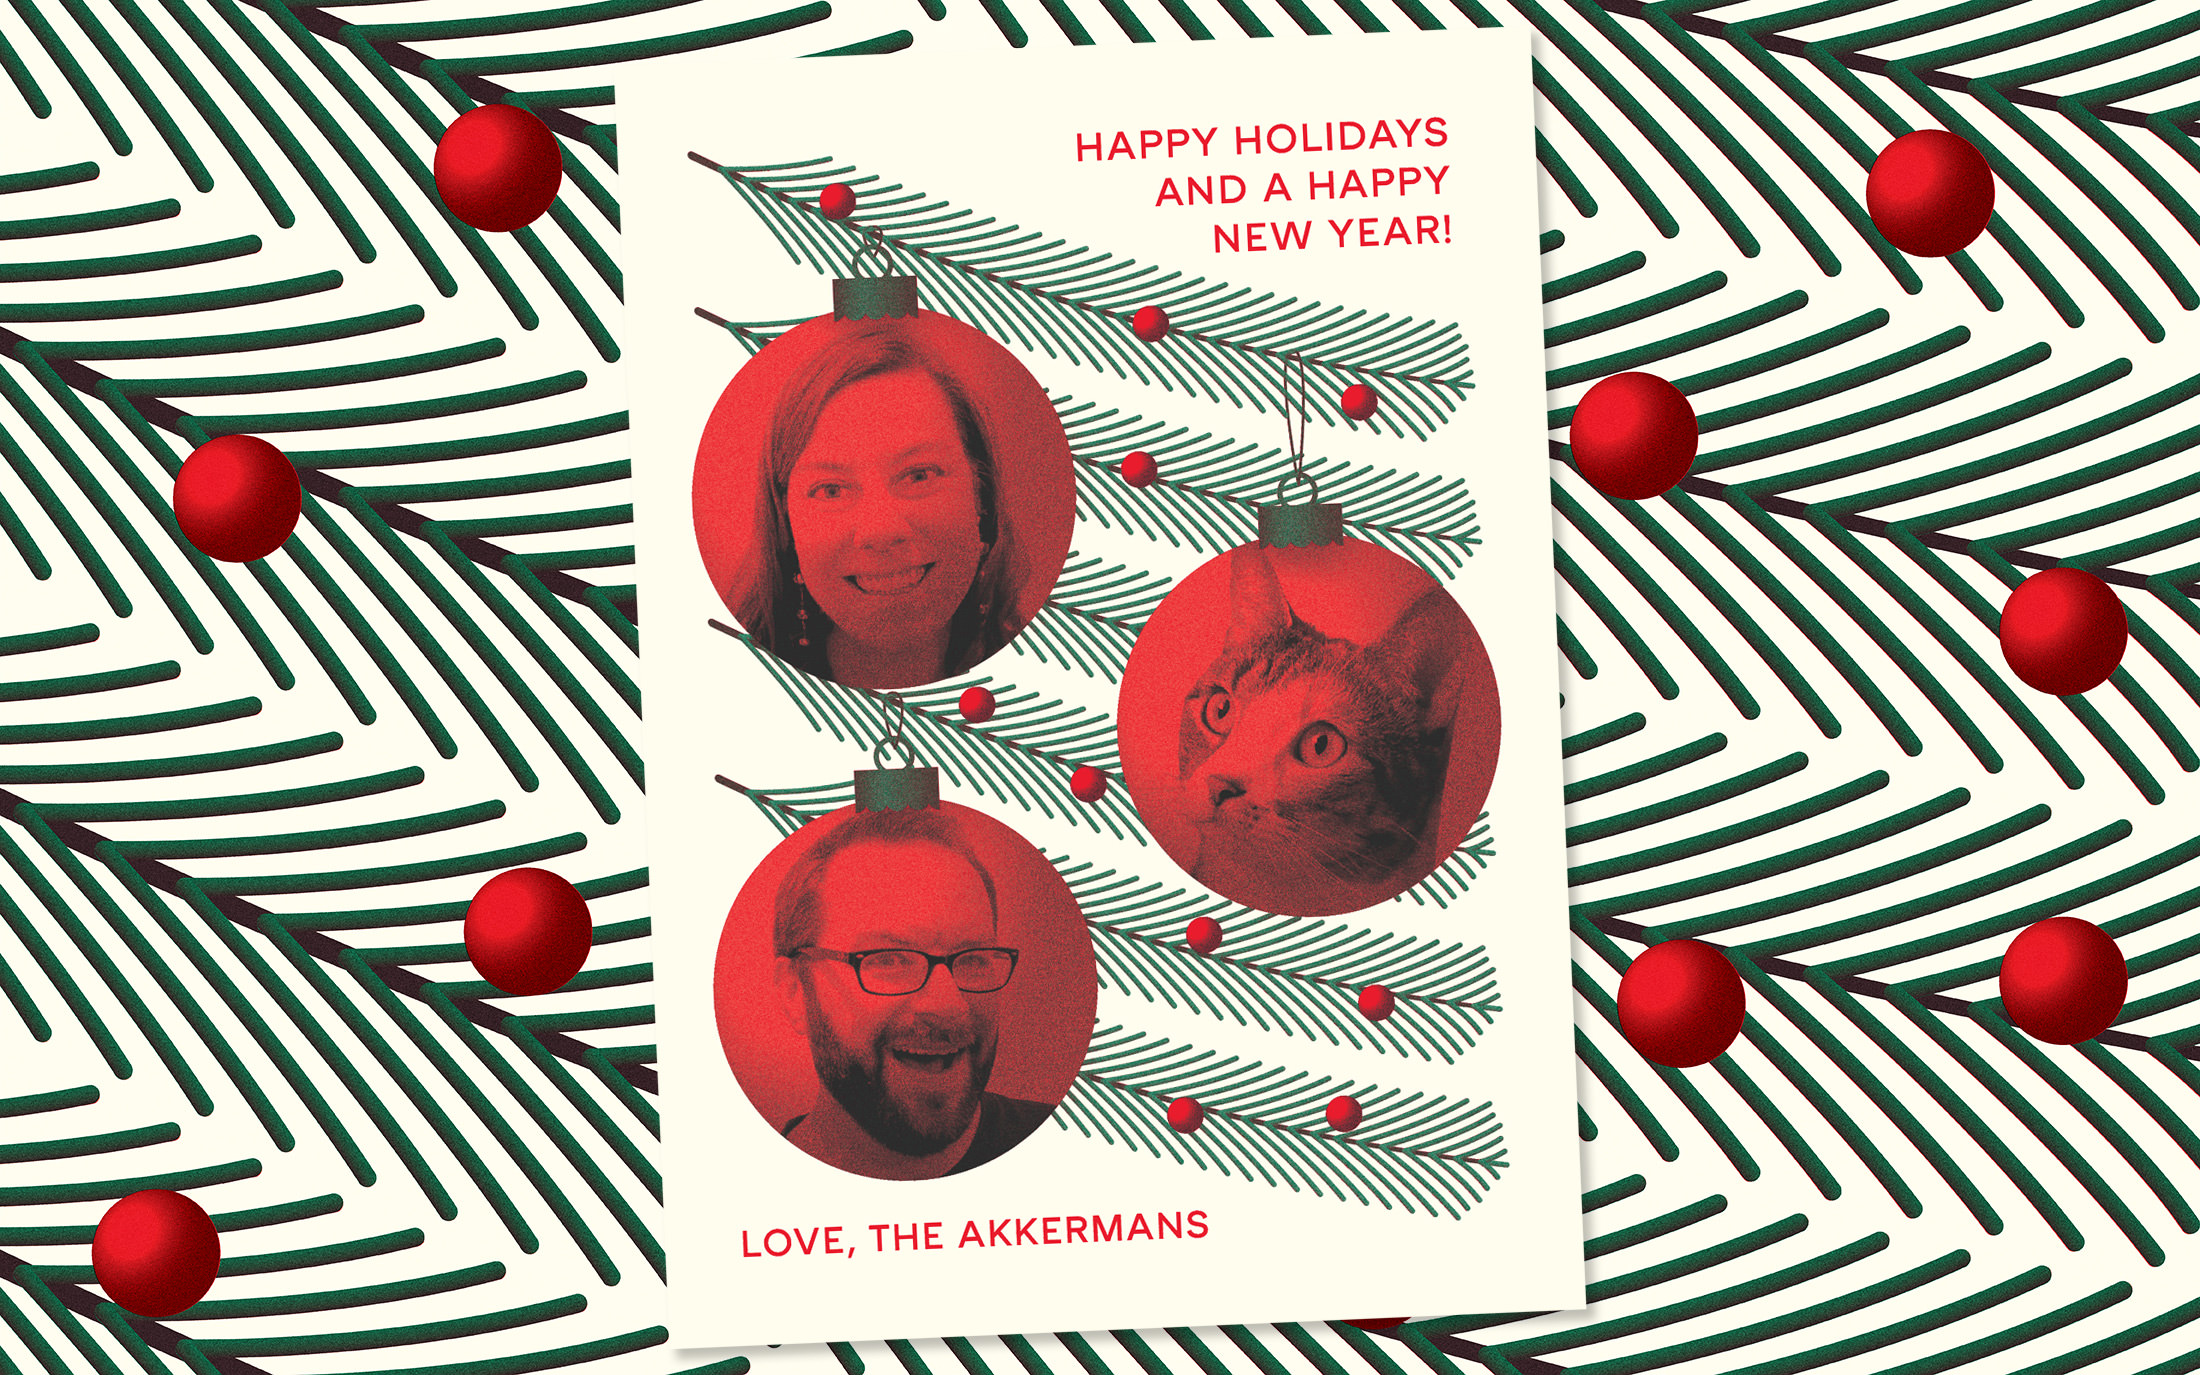 The 2020 Akkerman Family Holiday Card.